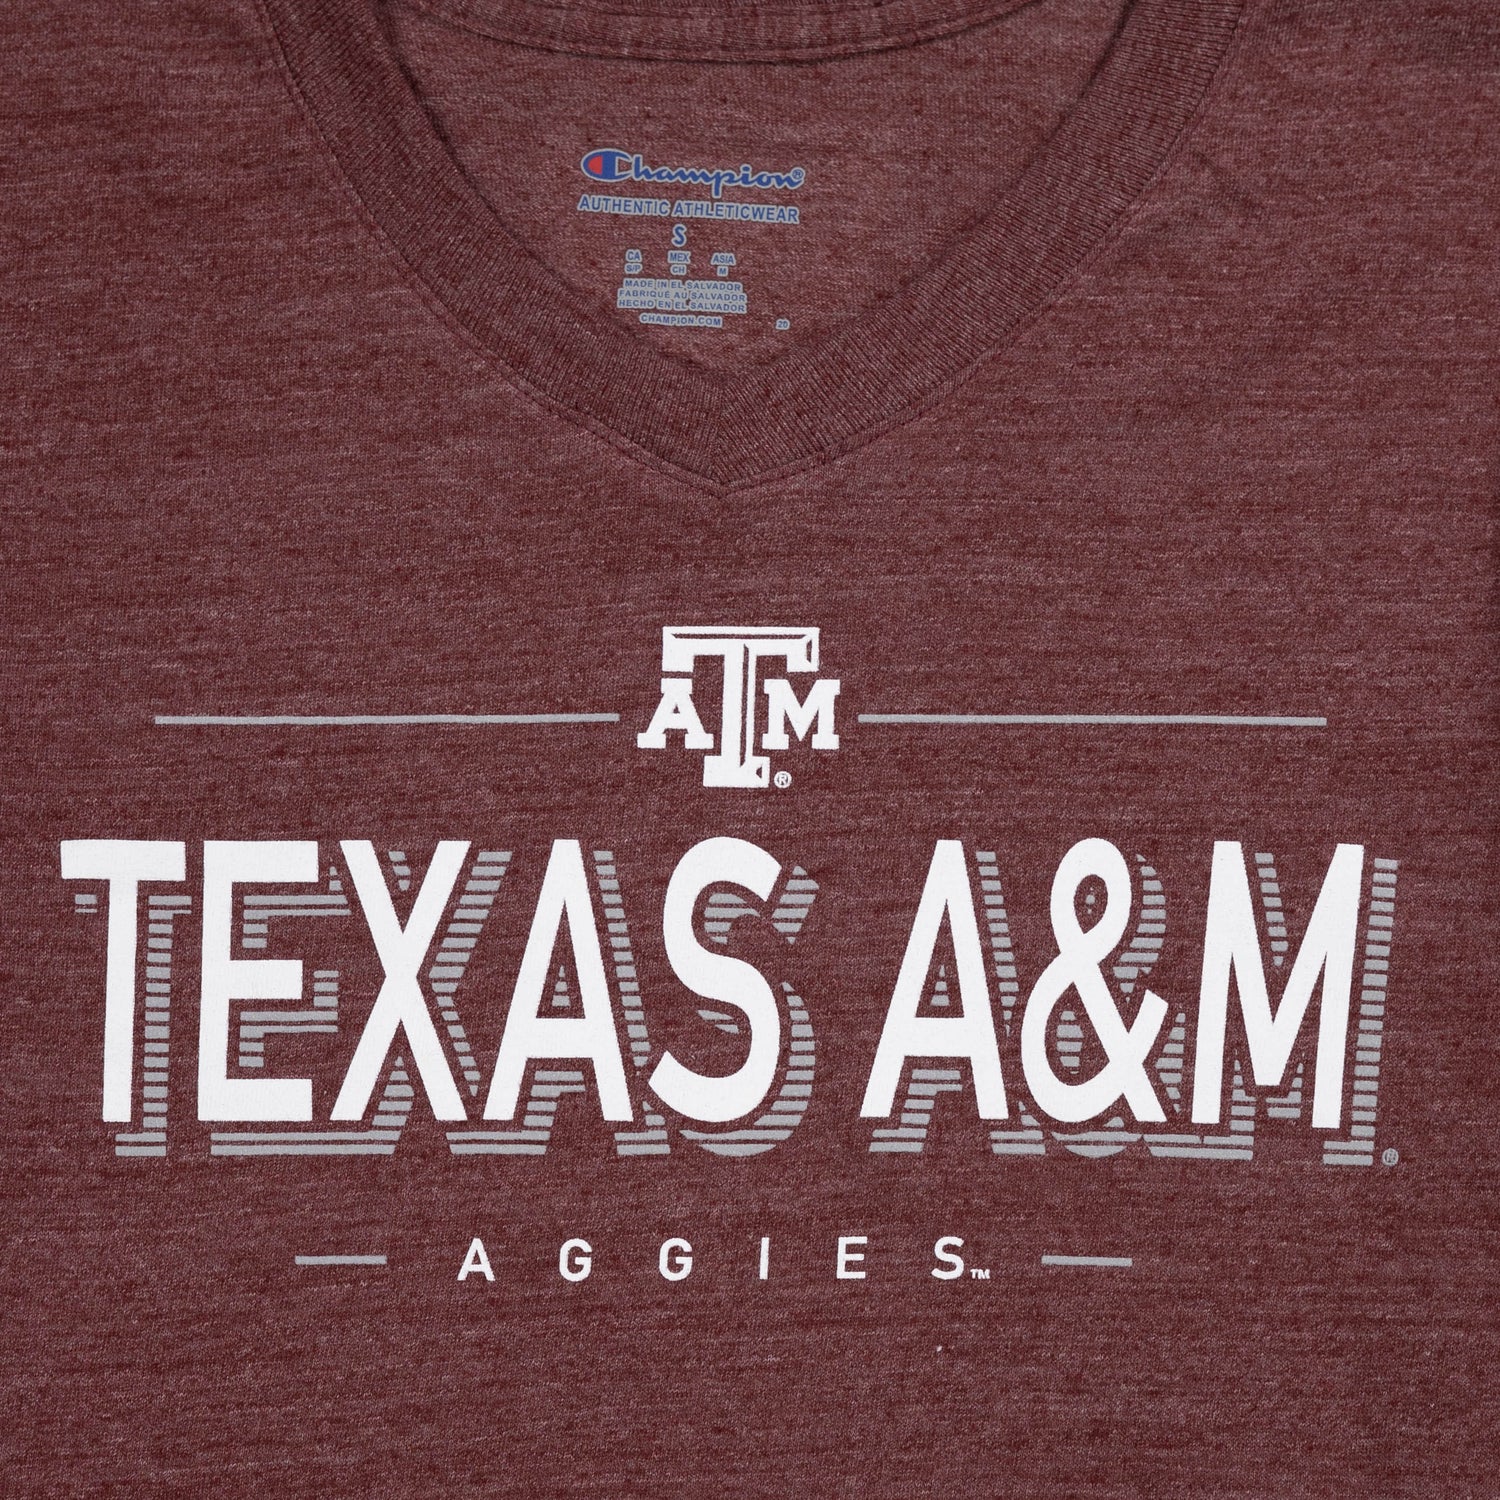 Texas A&M Aggies Tri-Blend V Neck